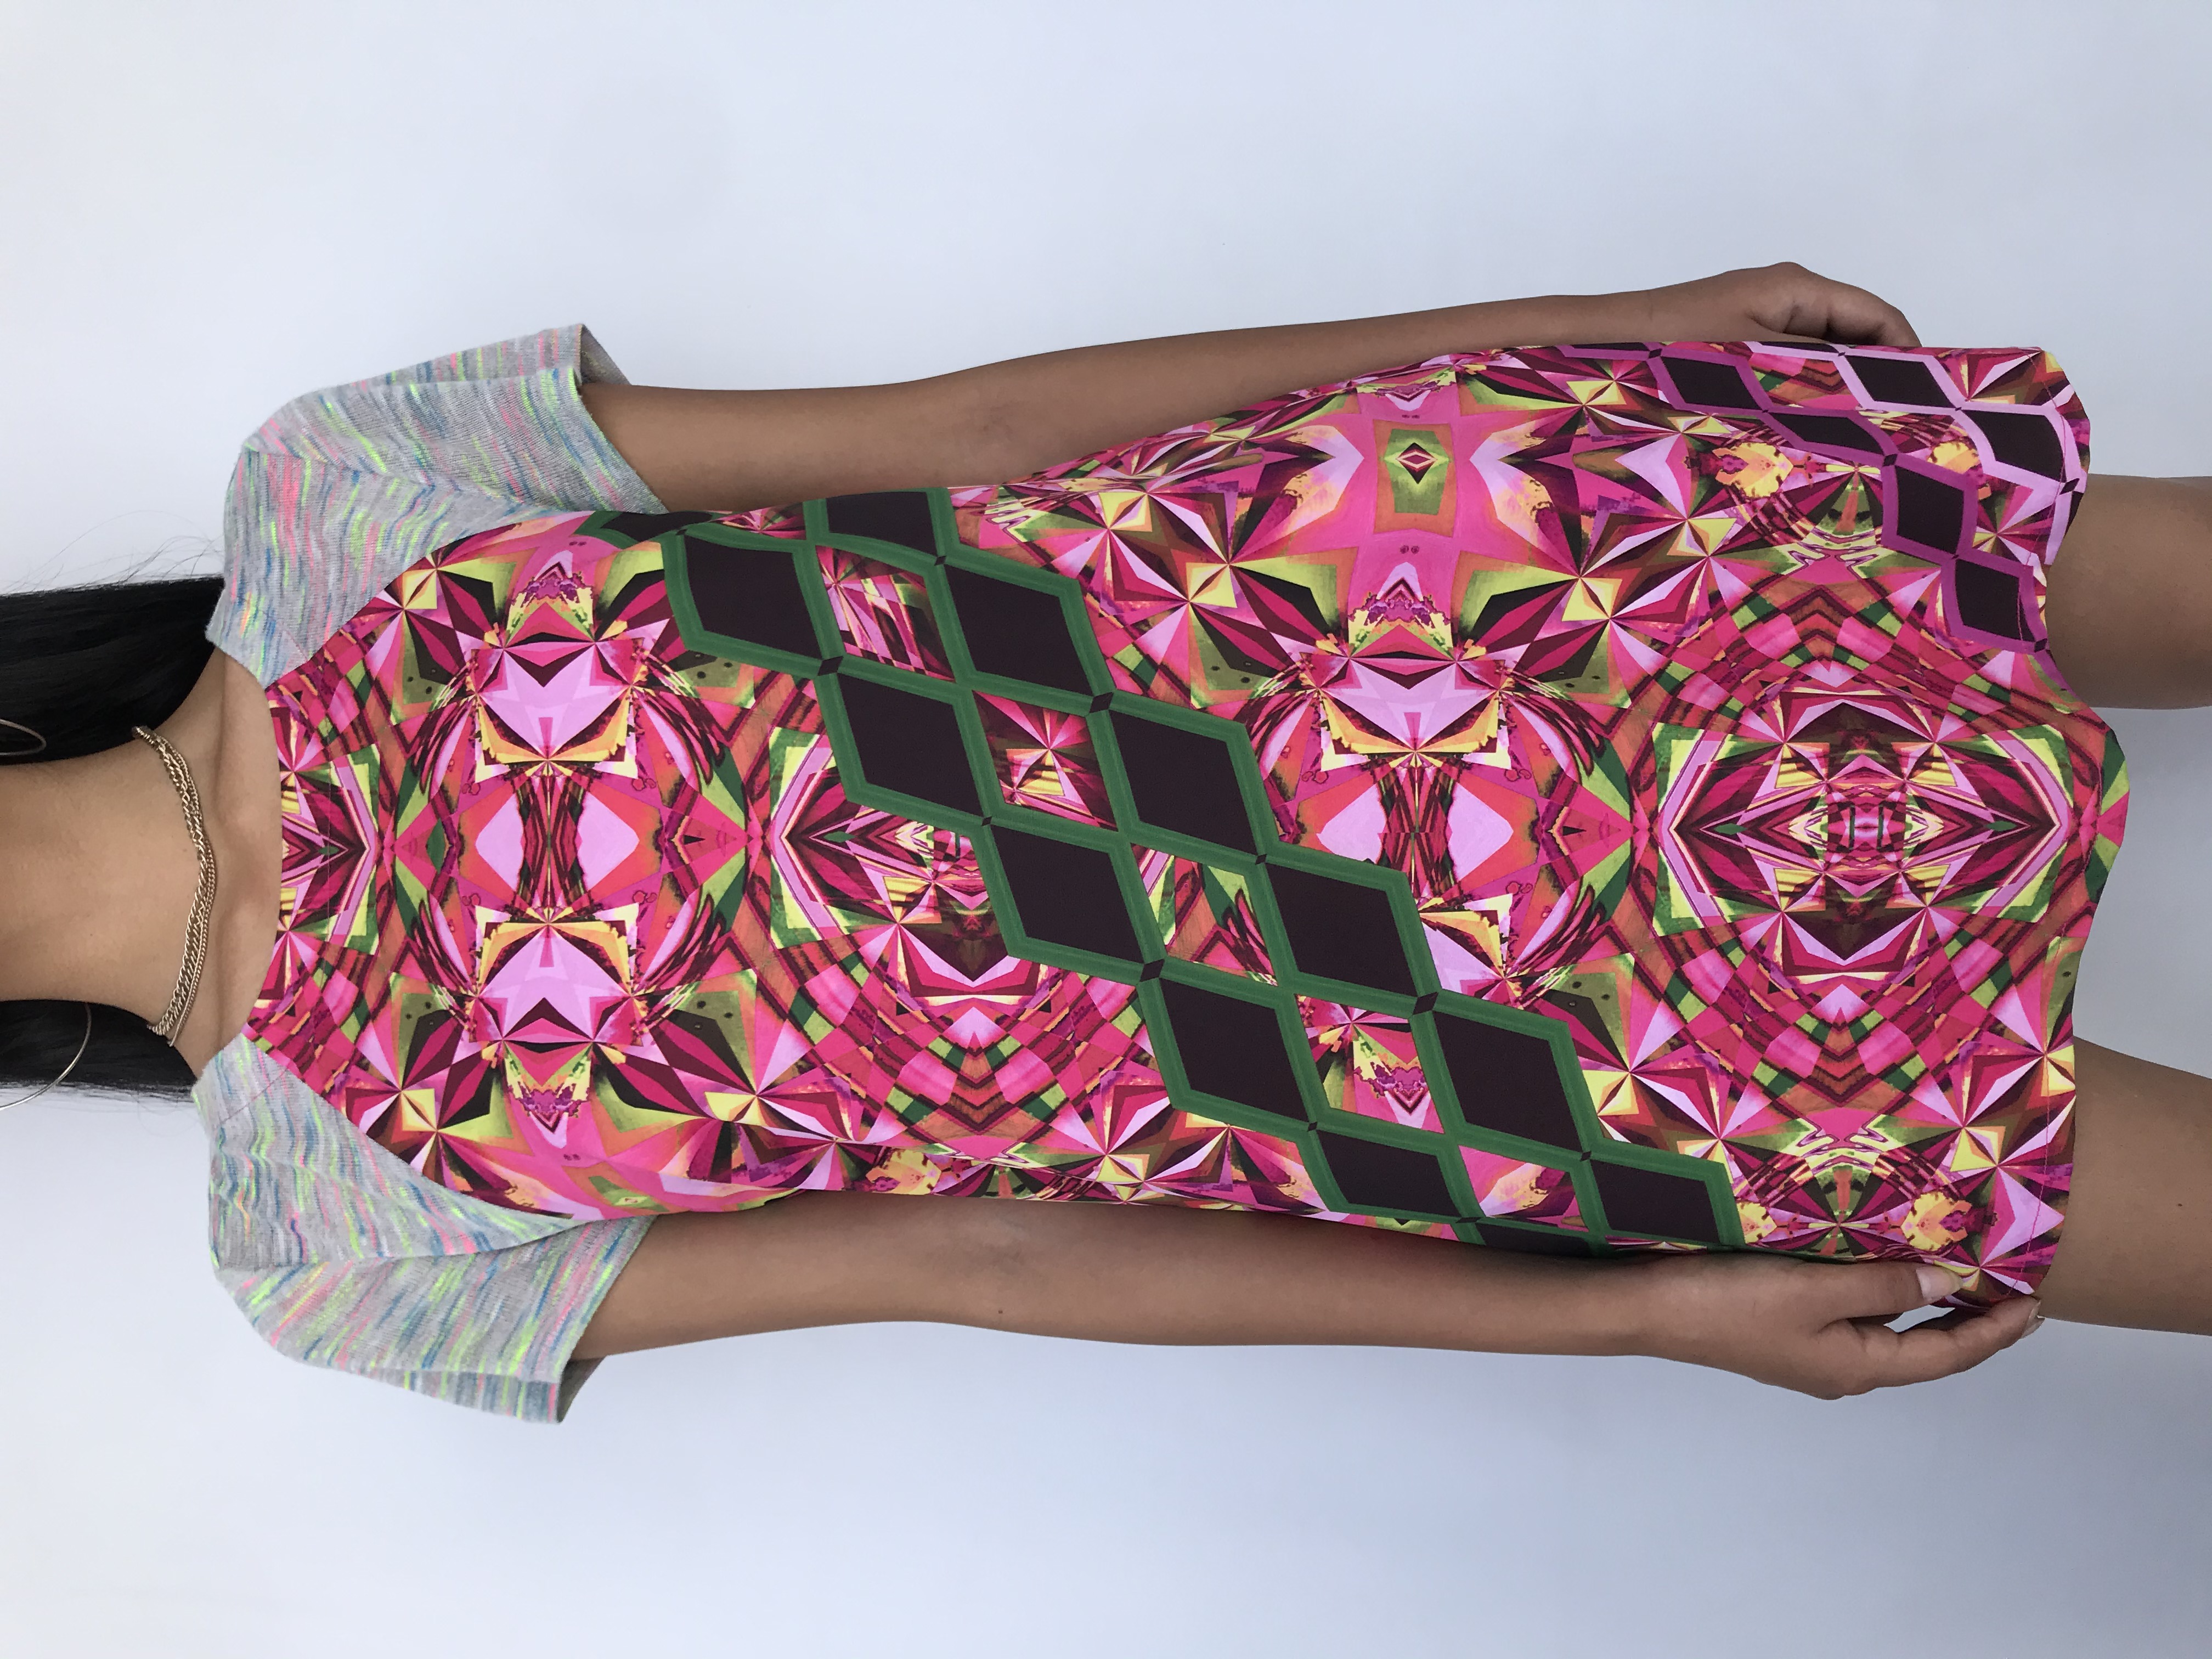 Vestido recto Custo Barcelona con estampado geométrico en tonos rosados y verdes, manga corta de tela tipo tejida ploma con jaspeado de colores, lleva forro. Precio original S/ 400
Talla S